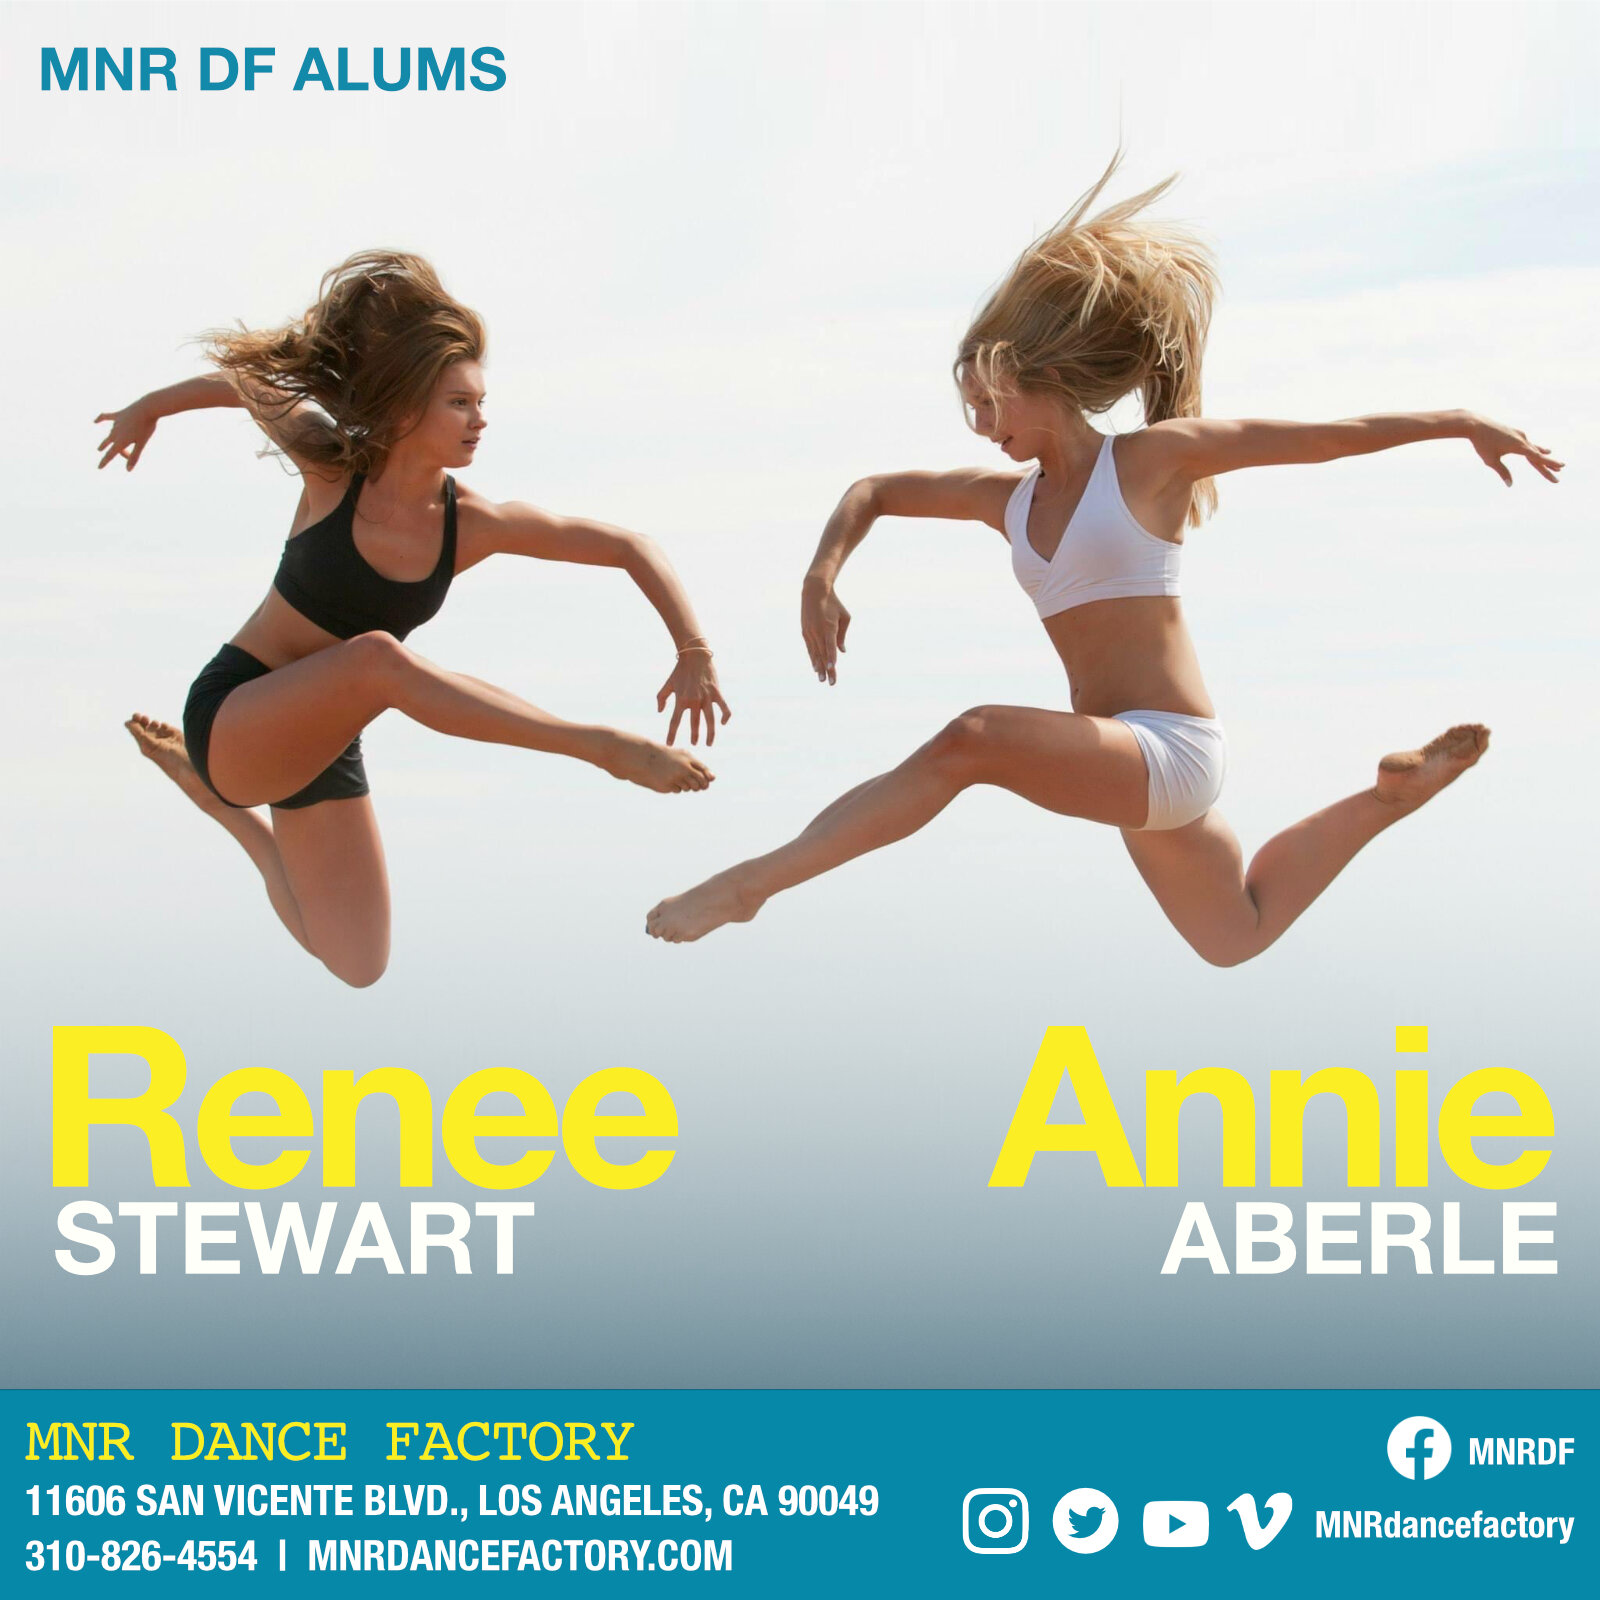 Renee Stewart and Annie Aberle